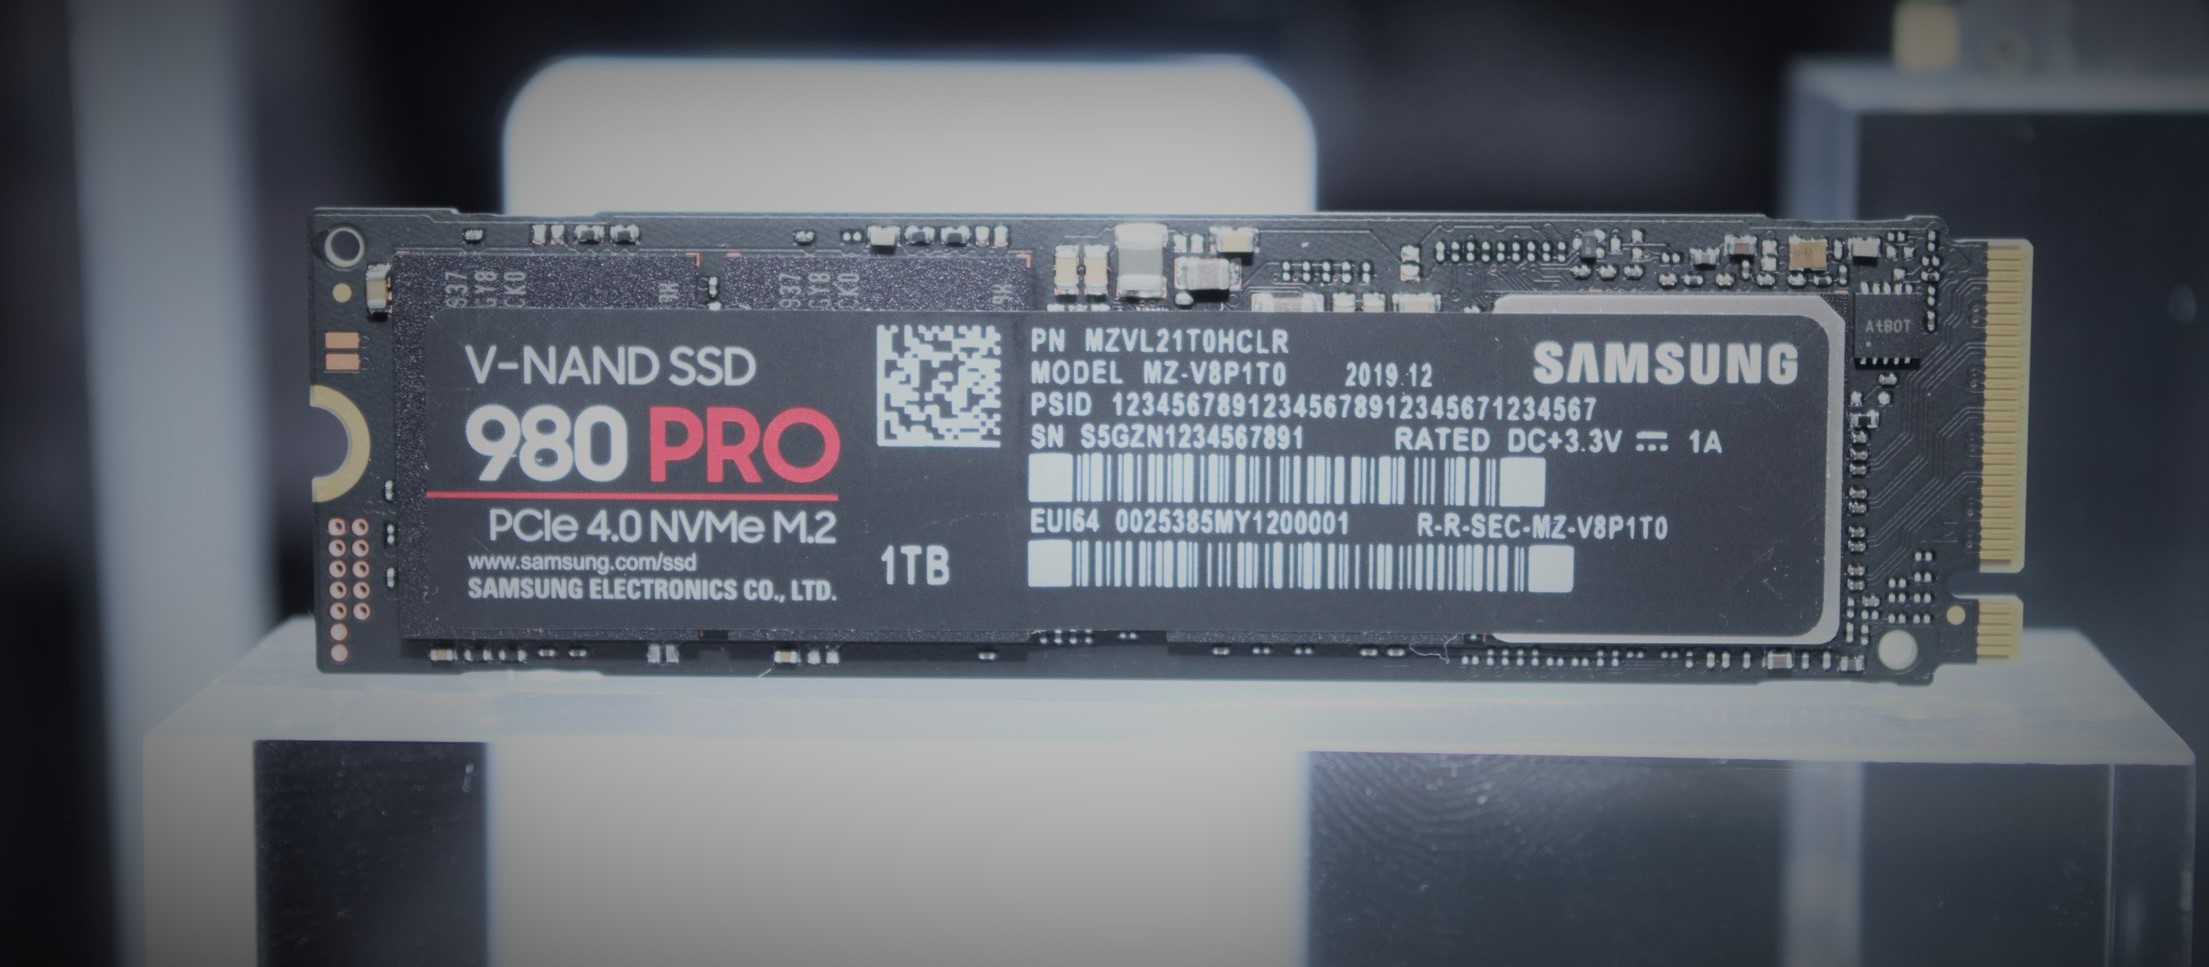 [ CES ] Le Samsung 980 PRO fait son apparition, PCIe 4.0 mais ce n'est pas le plus rapide